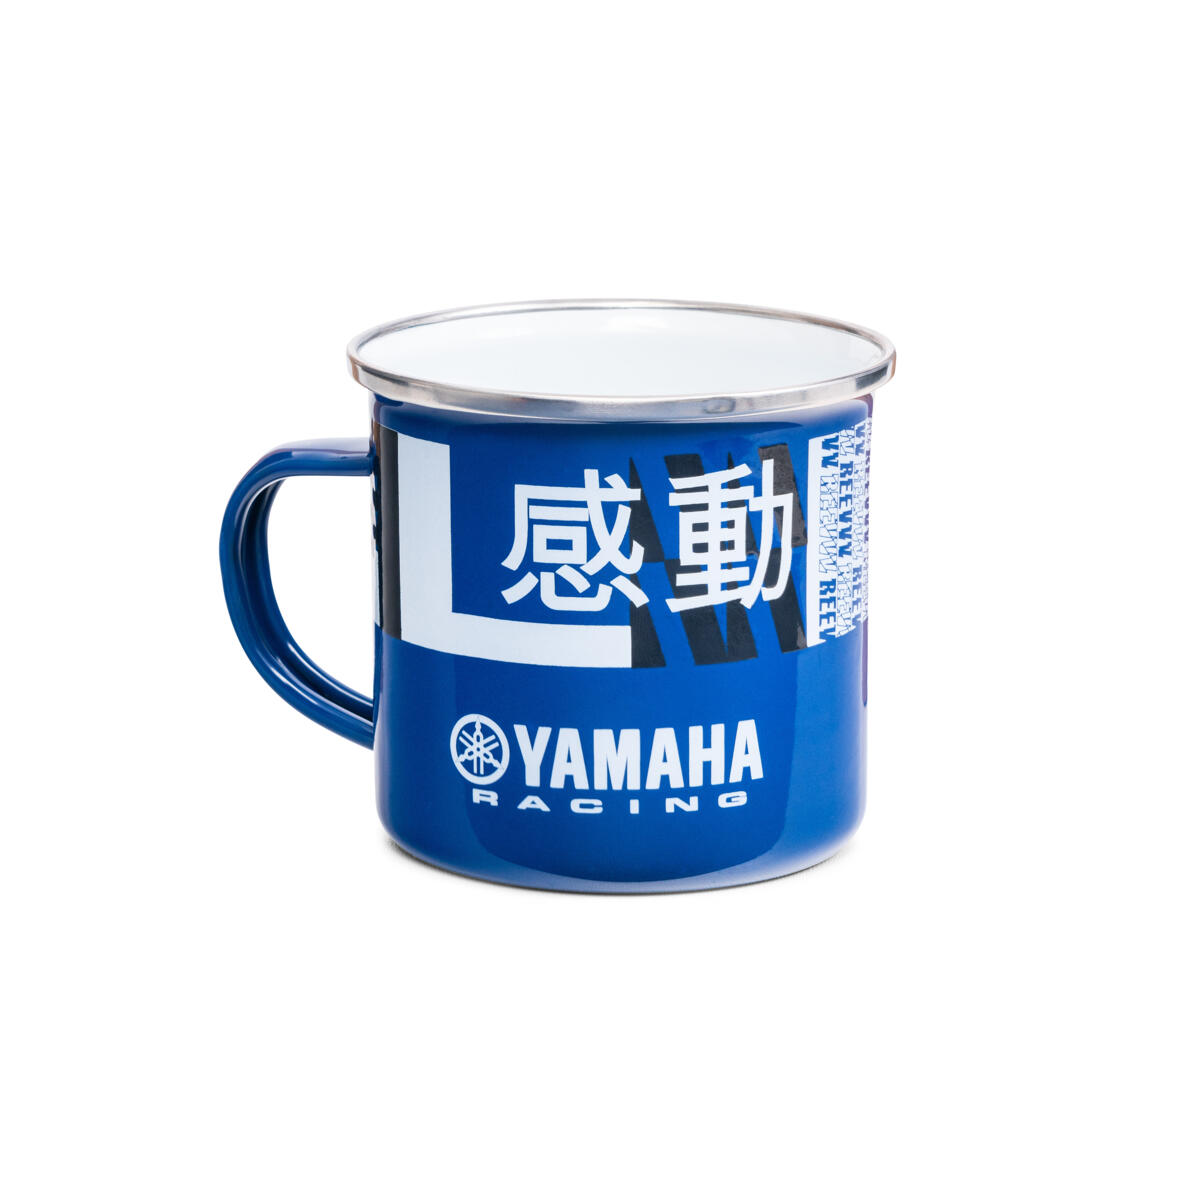 Disfruta de un té o un café con esta taza esmaltada y su diseño especial de Yamaha Racing.